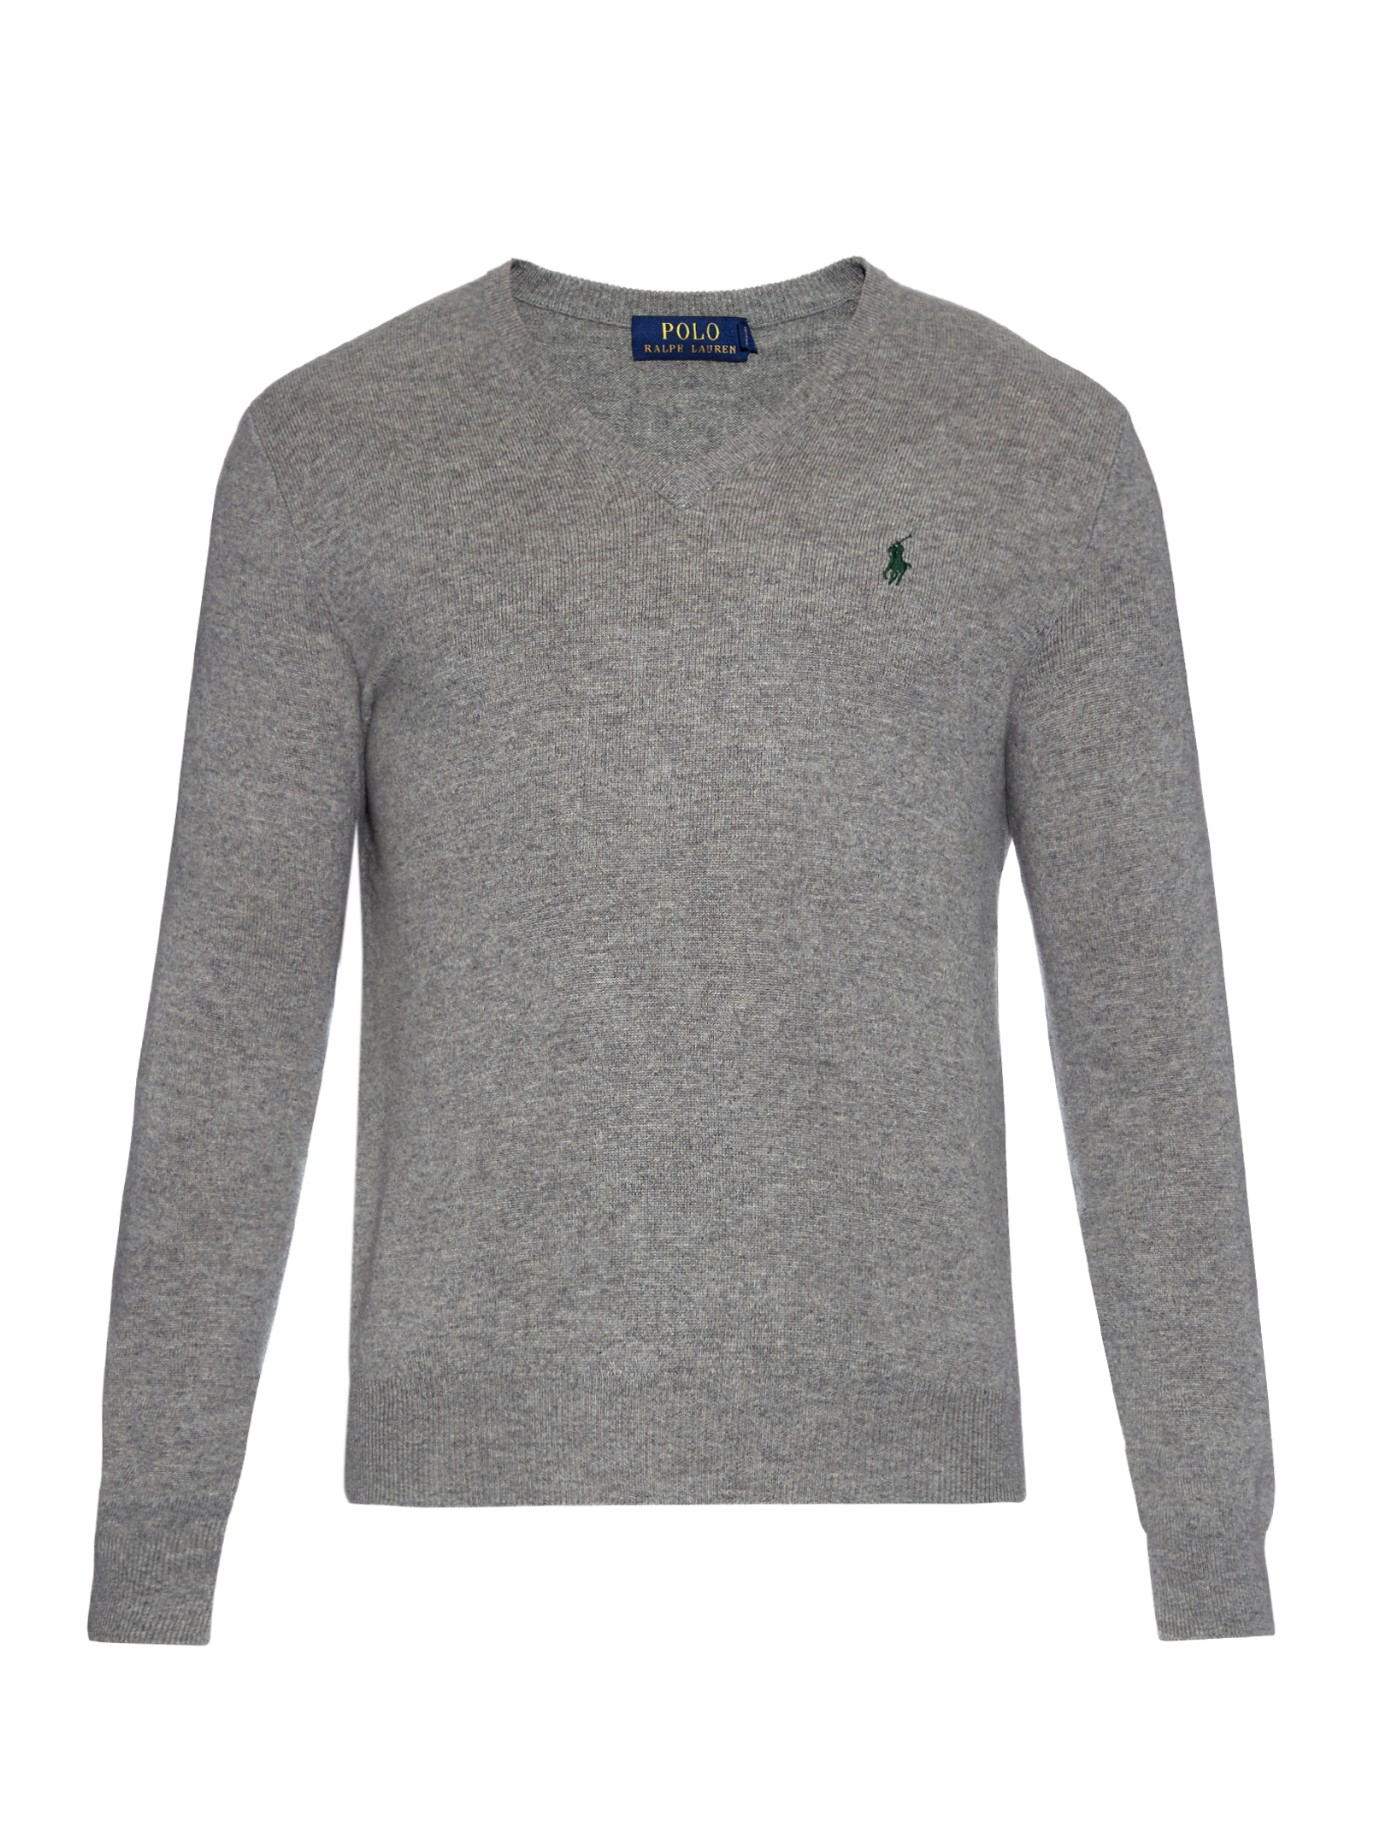 Lyst - Polo ralph lauren V-neck Long-sleeved Wool Sweater in Gray for Men